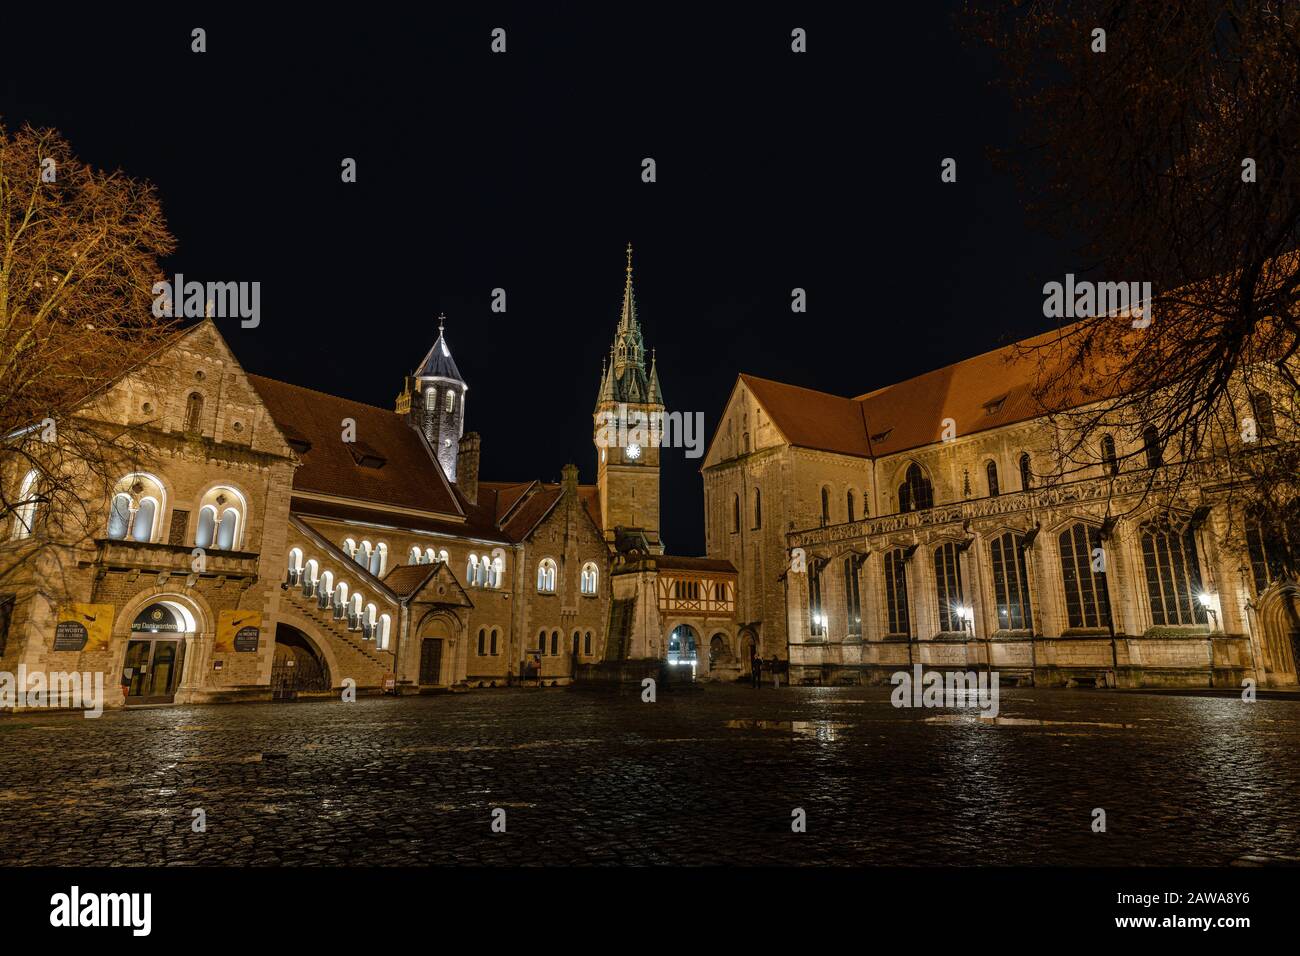 Braunschweiger Schloss und Kuppel beleuchteten in der Winternacht Stockfoto